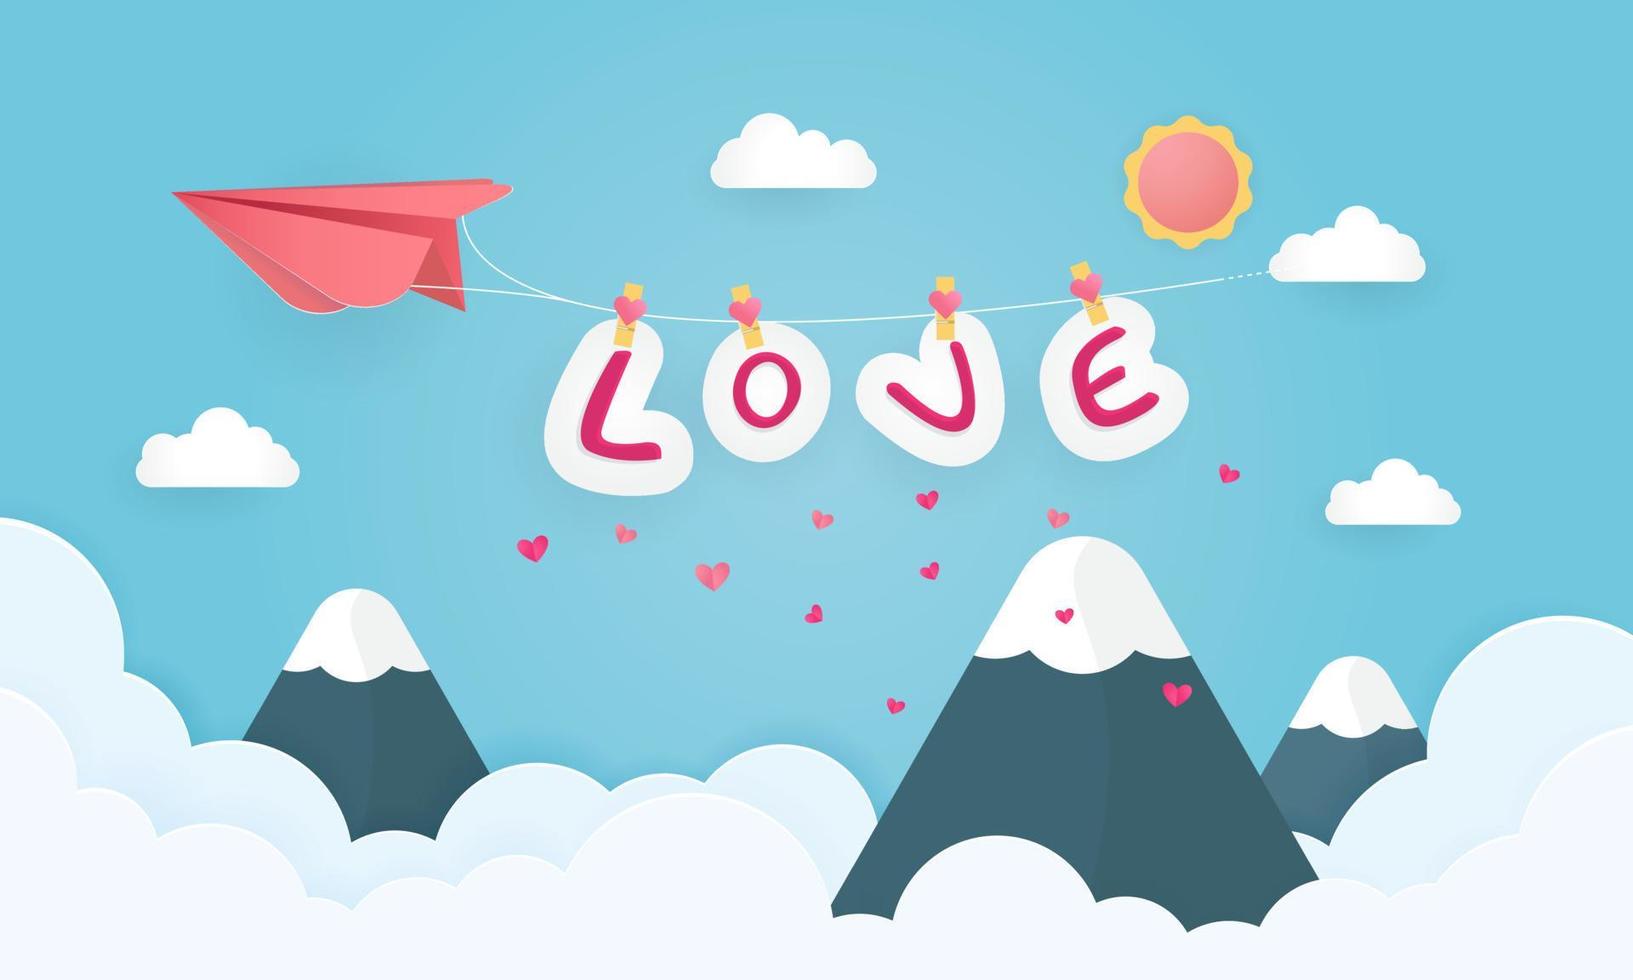 ilustração de amor e dia dos namorados com balão de coração de papel e caixa de presente flutuam no céu azul. pode ser usado para papel de parede, folhetos, convites, cartazes, banners. estilo de corte de papel. vetor